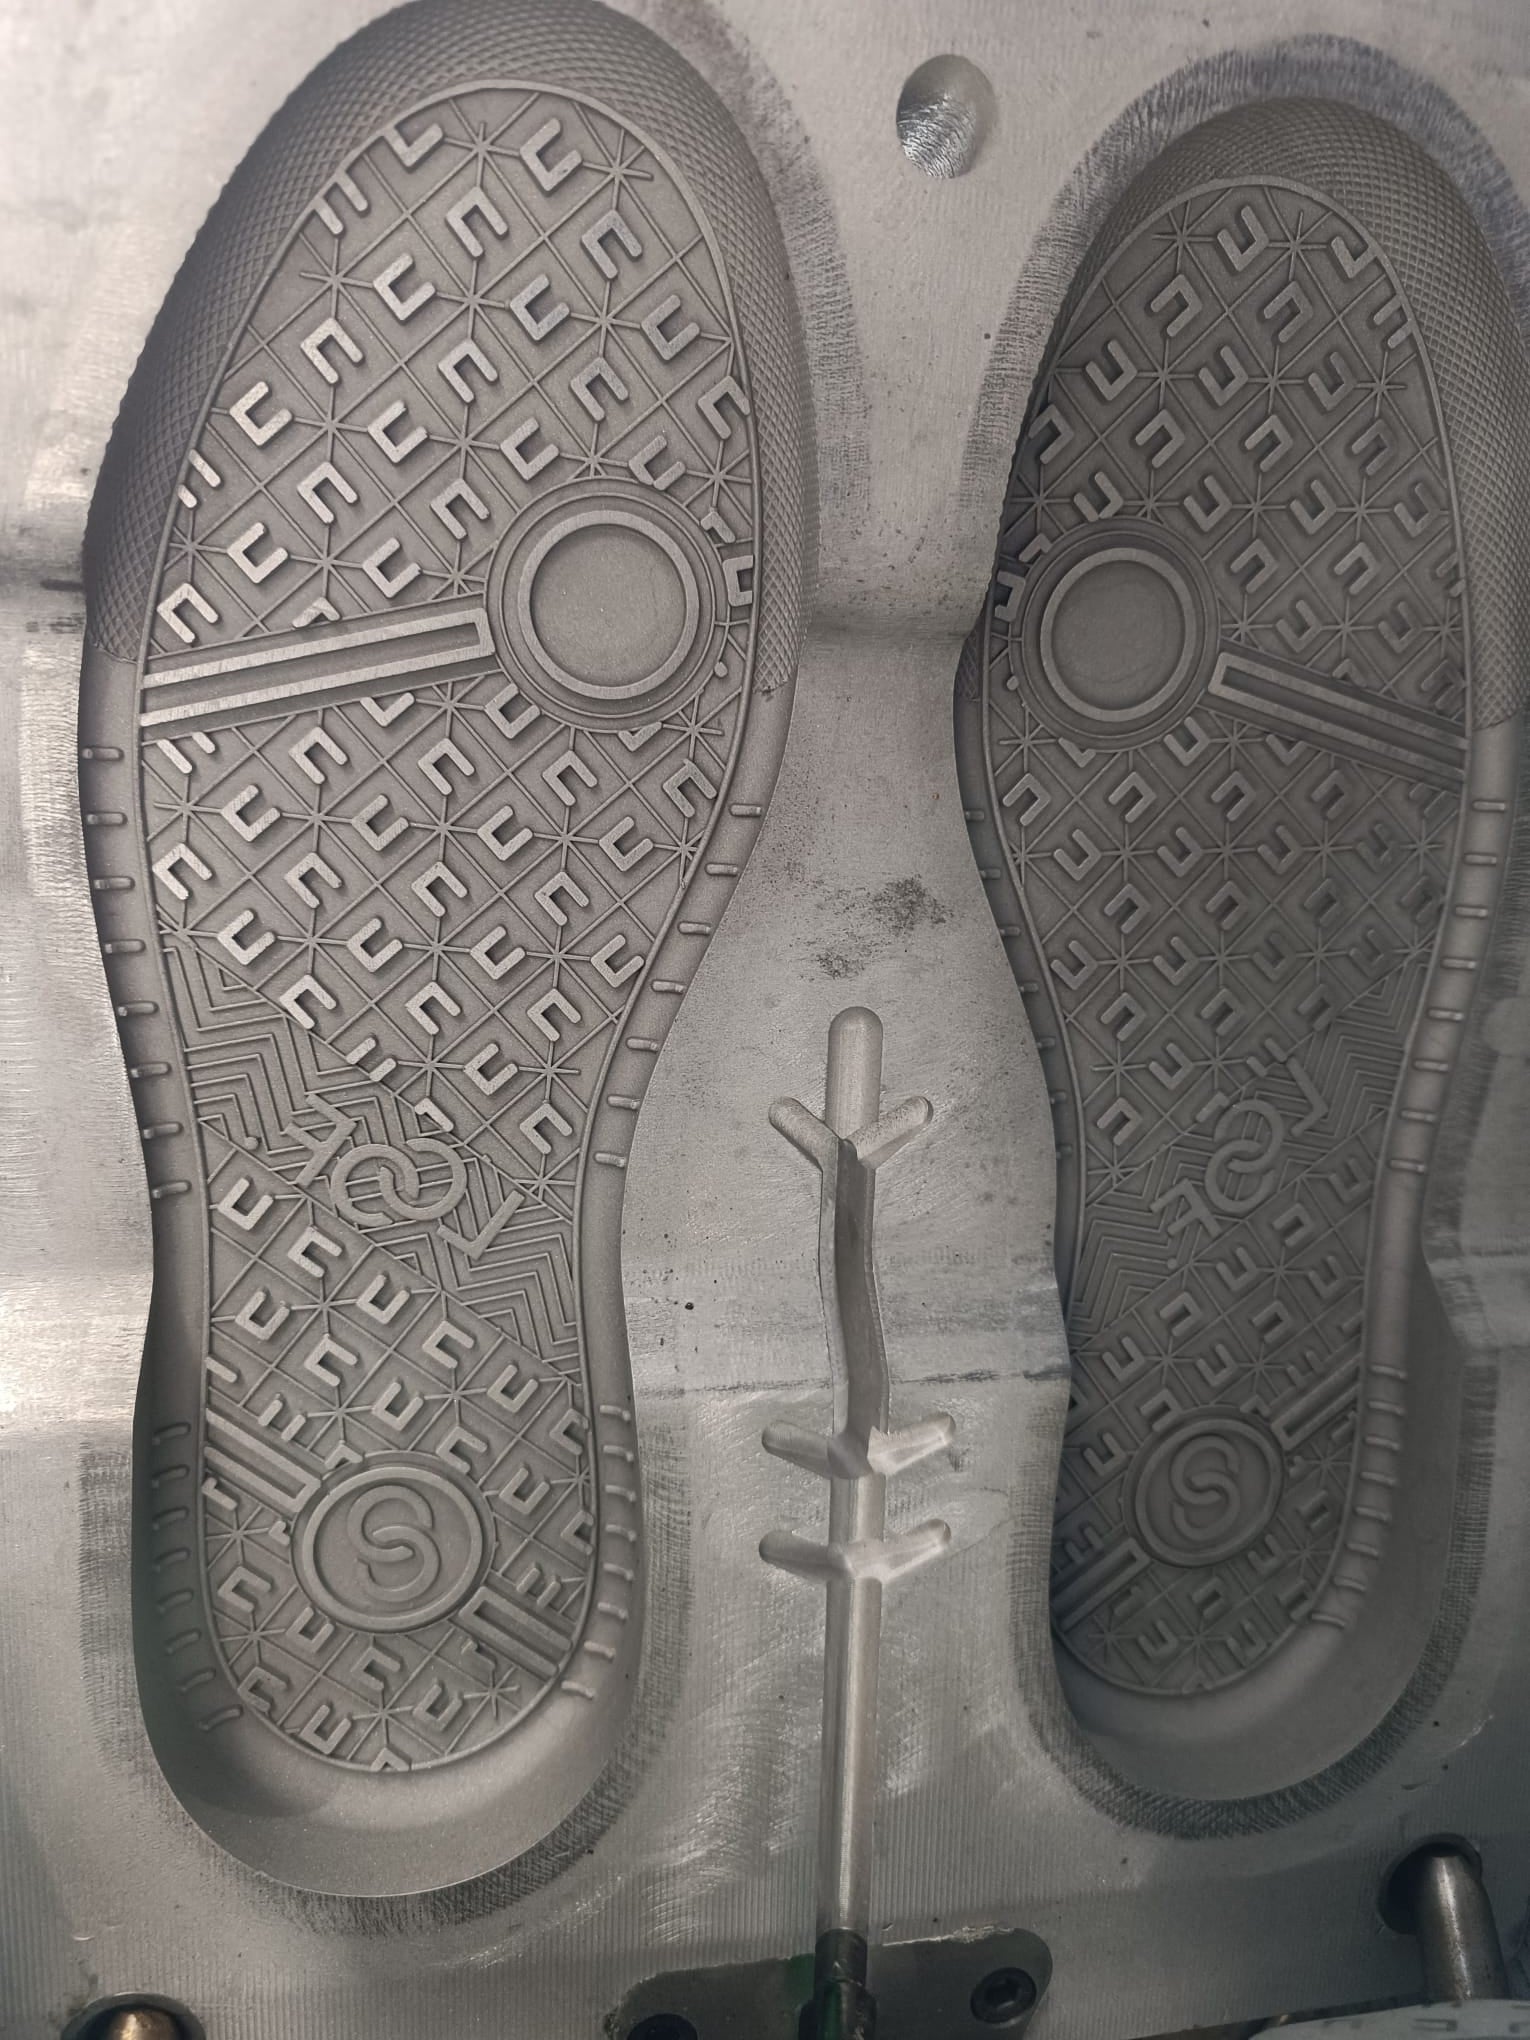 LOOF. Swiss Streetwear brand sneaker mold in metal